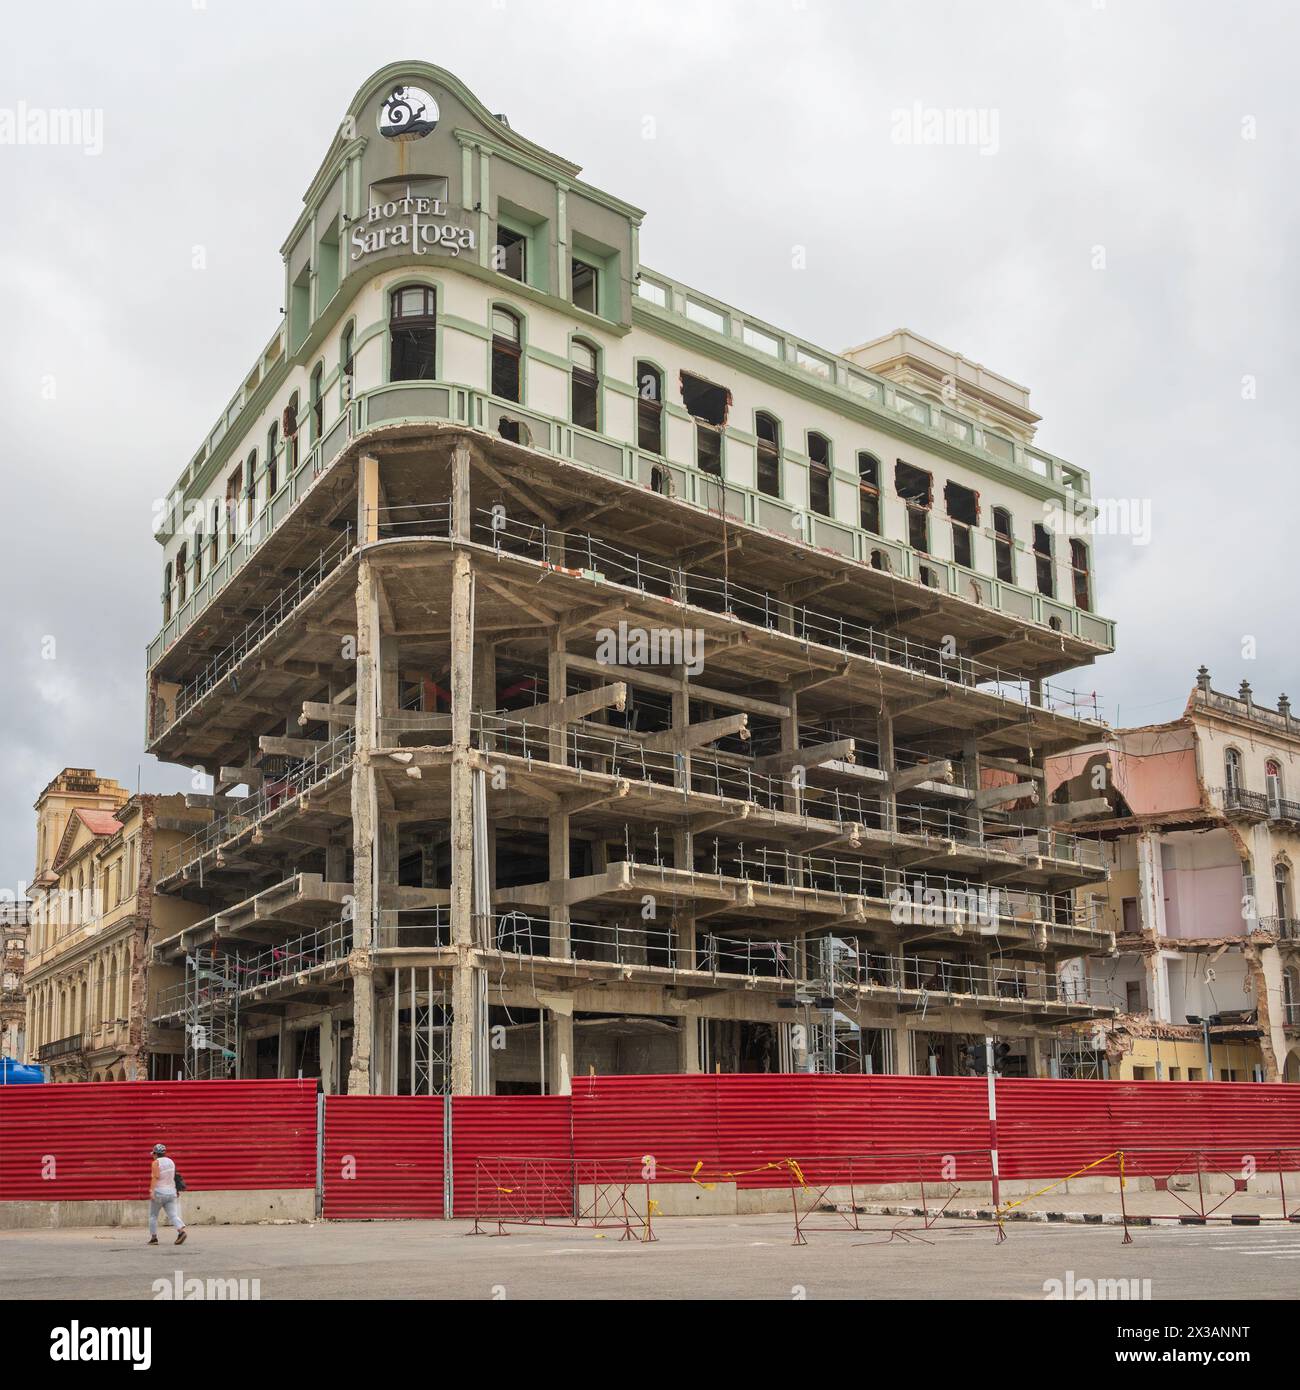 La reconstruction de l'Hôtel Saratoga qui a été dévasté par une explosion de gaz le 6 mai 2022 tuant 47 personnes. Paseo del Prado, Centre de la Havane, Cuba Banque D'Images